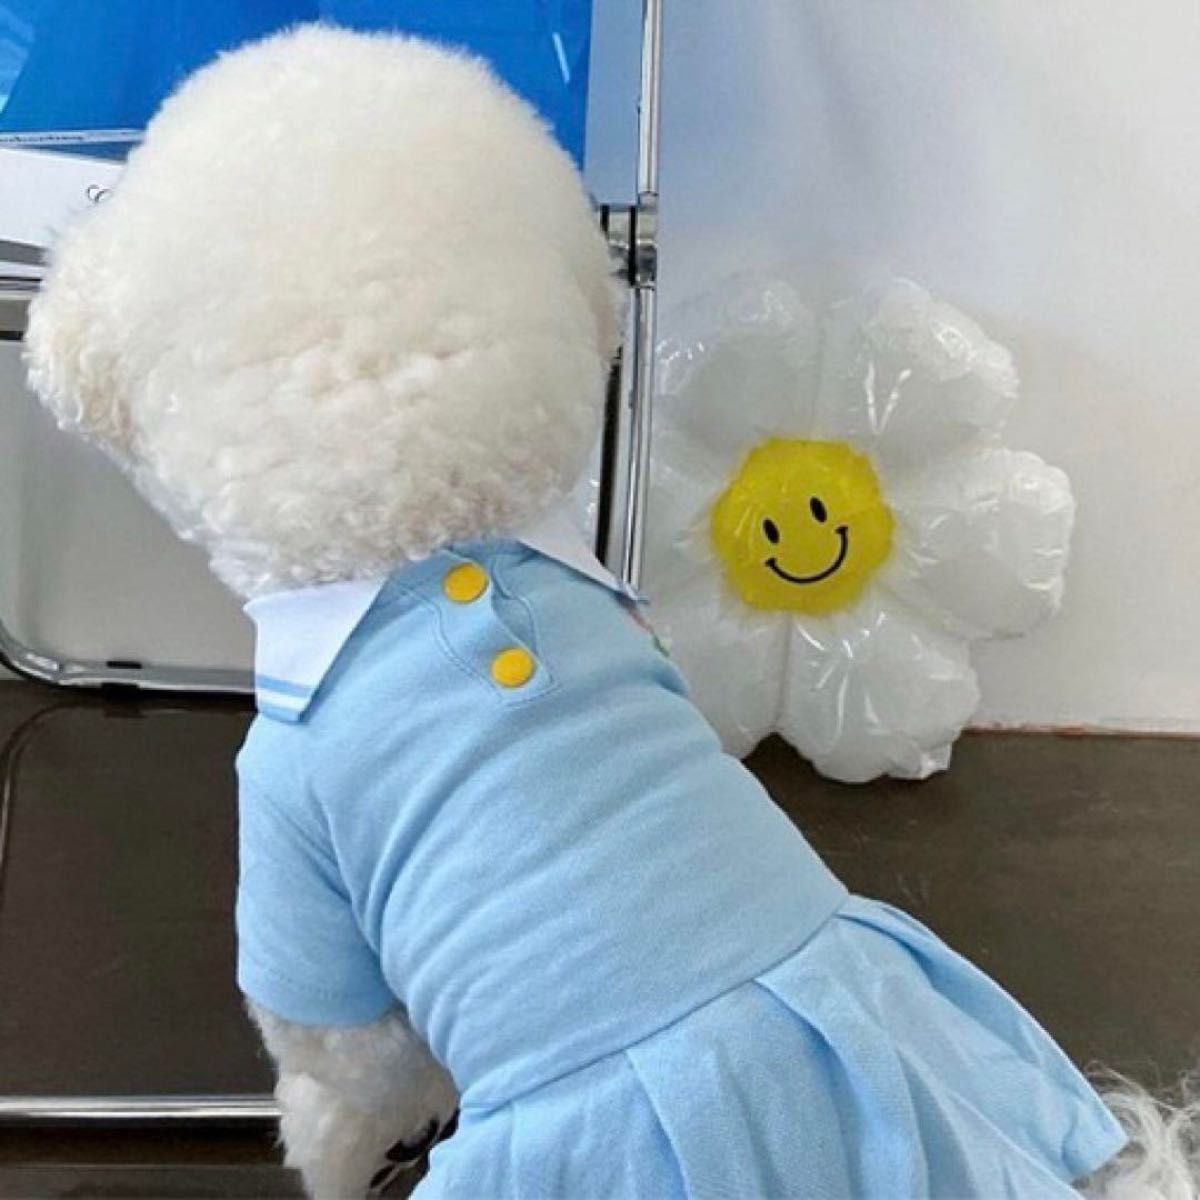 小型犬 犬服 ポロシャツ ワンピース ポロシャツワンピ ブルー 青 水色 Mサイズ  犬服 部屋着